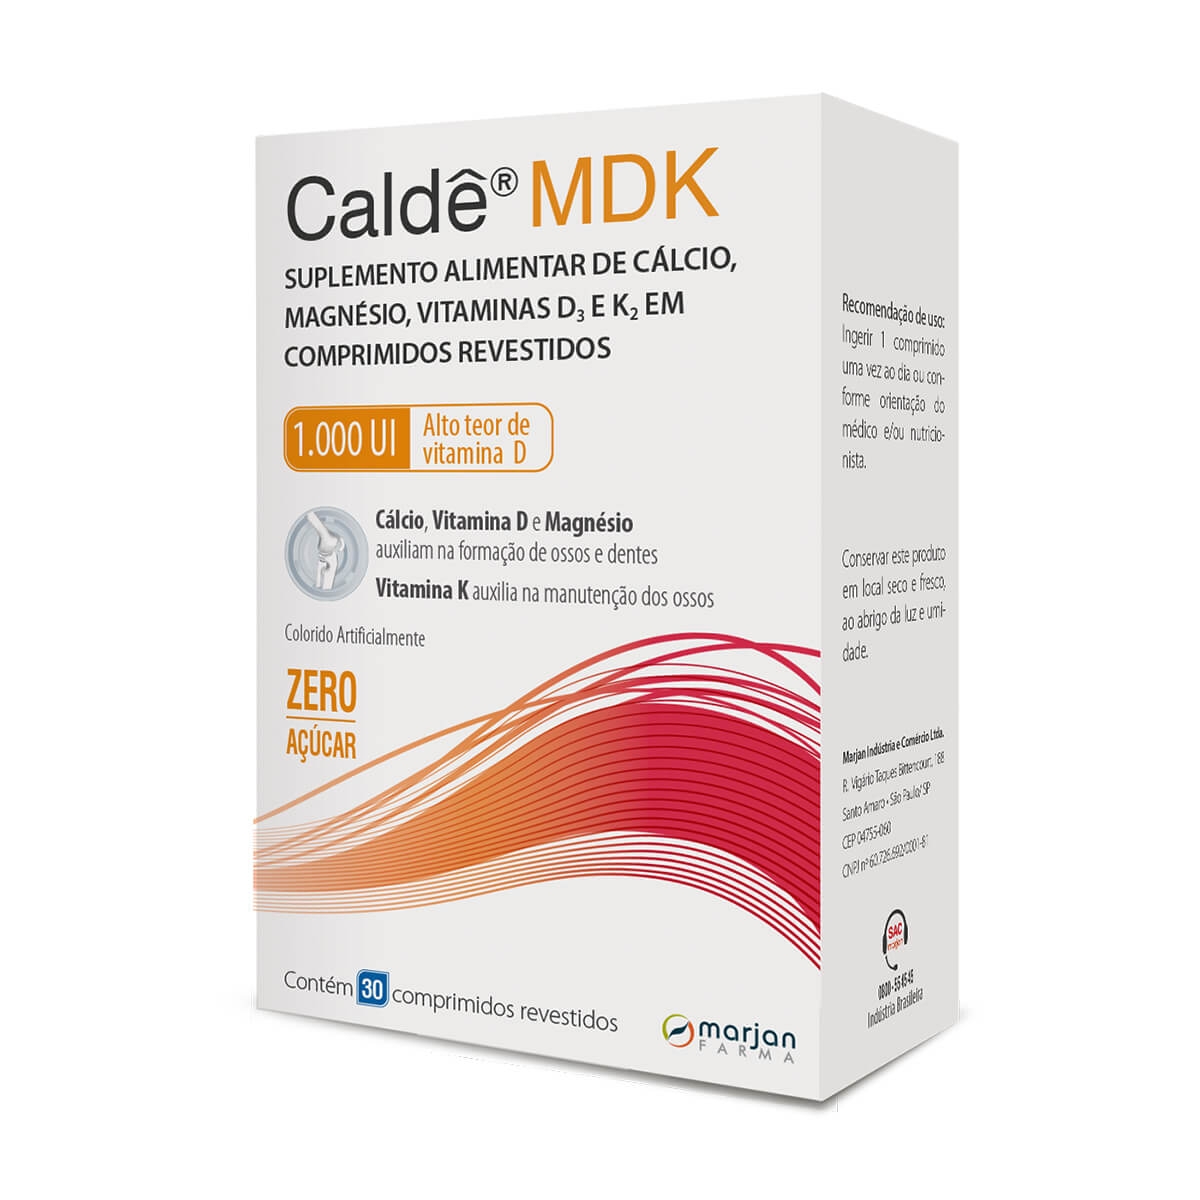 Caldê MDK 1000UI Suplemento Alimentar com 30 comprimidos